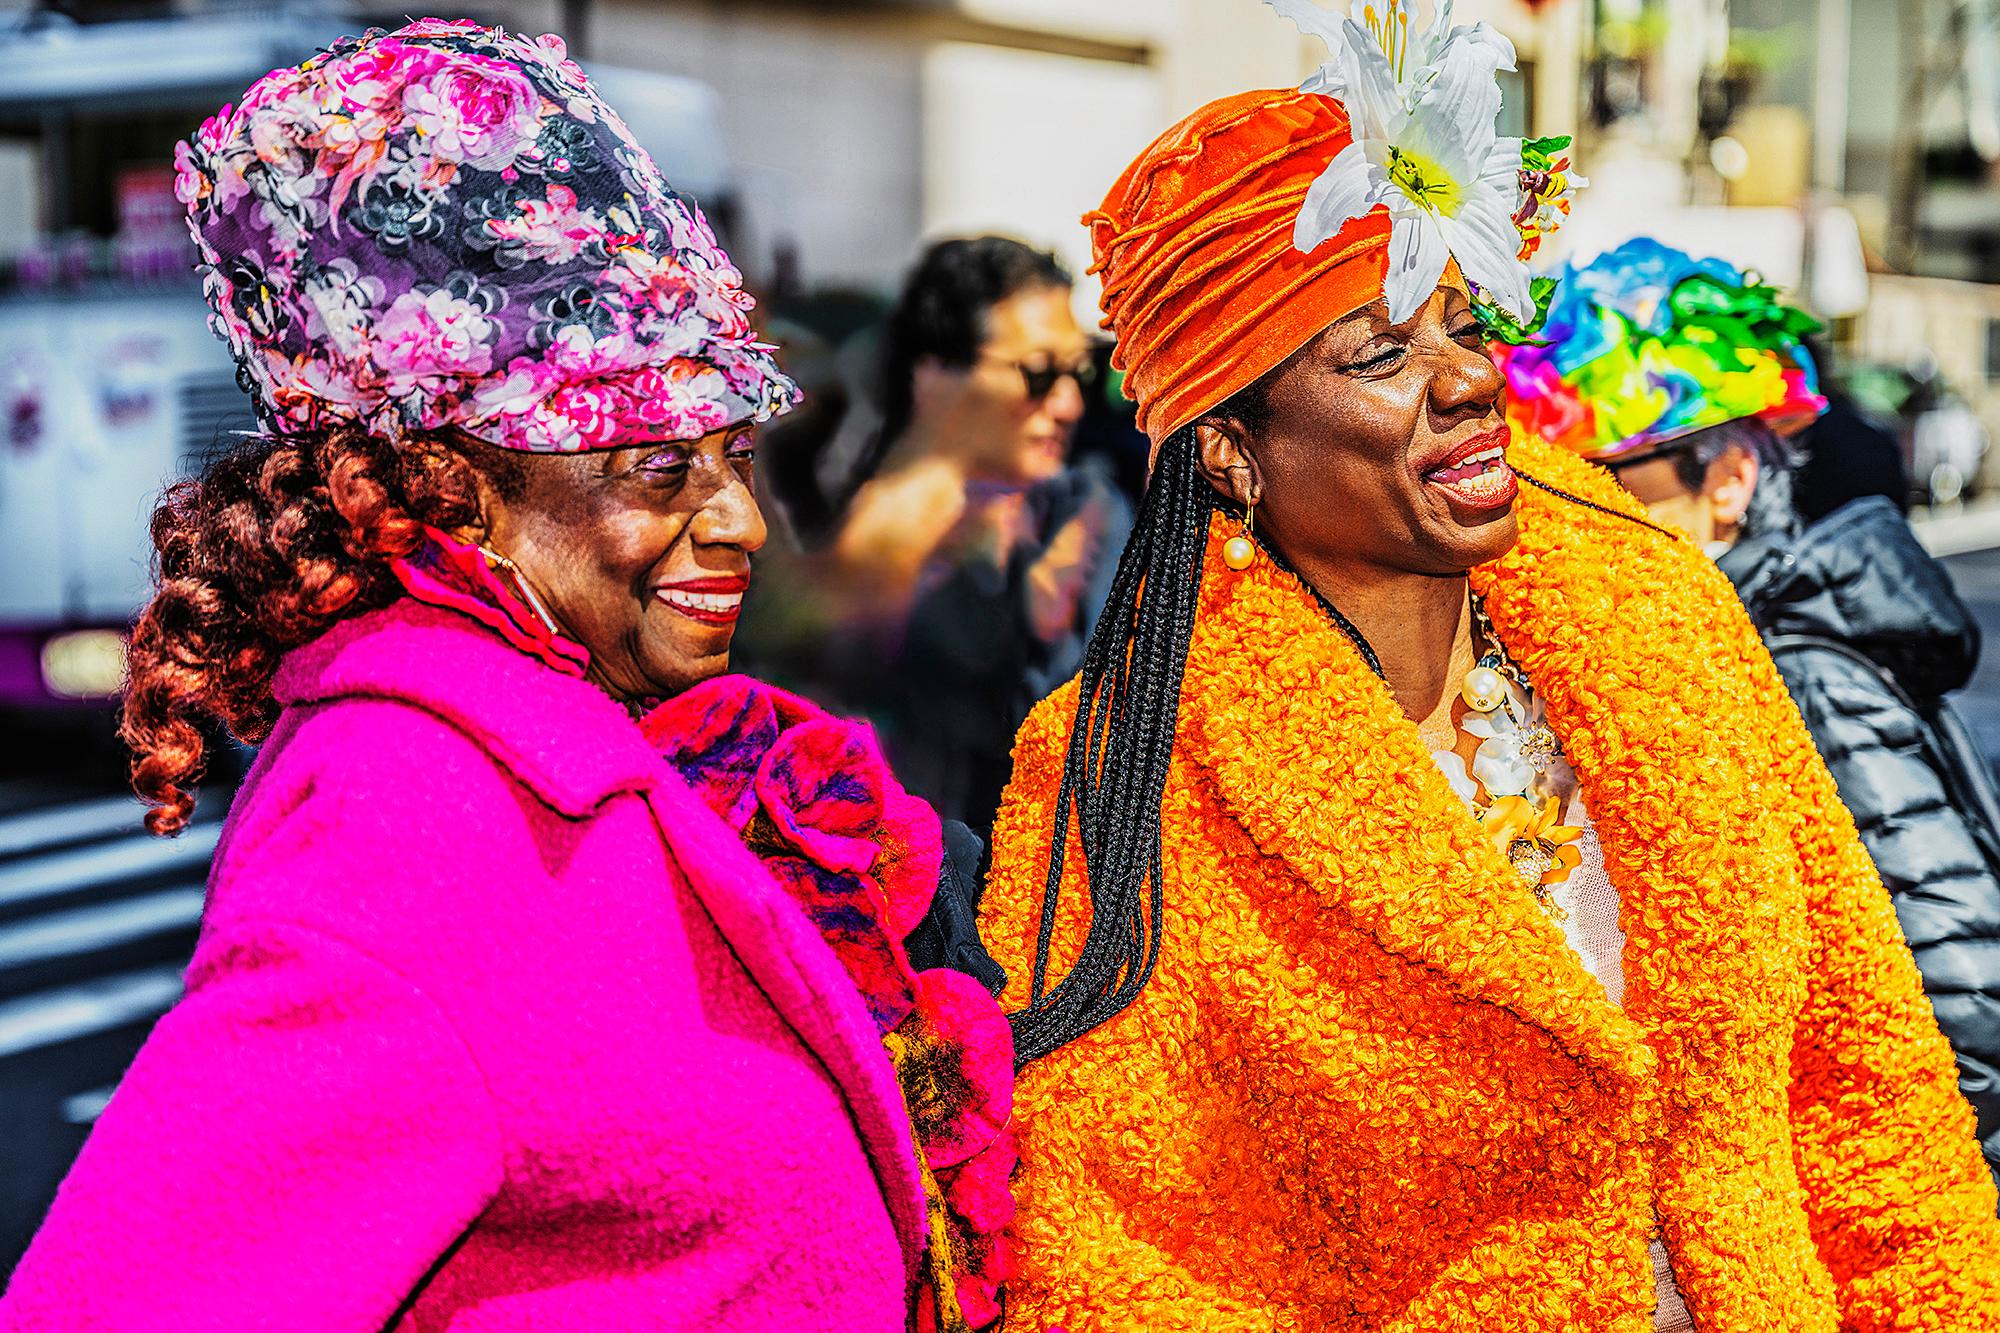 Color Photograph Mitchell Funk - Deux femmes afro-américaines brillent en rose  Parade orange du jour de Pâques 